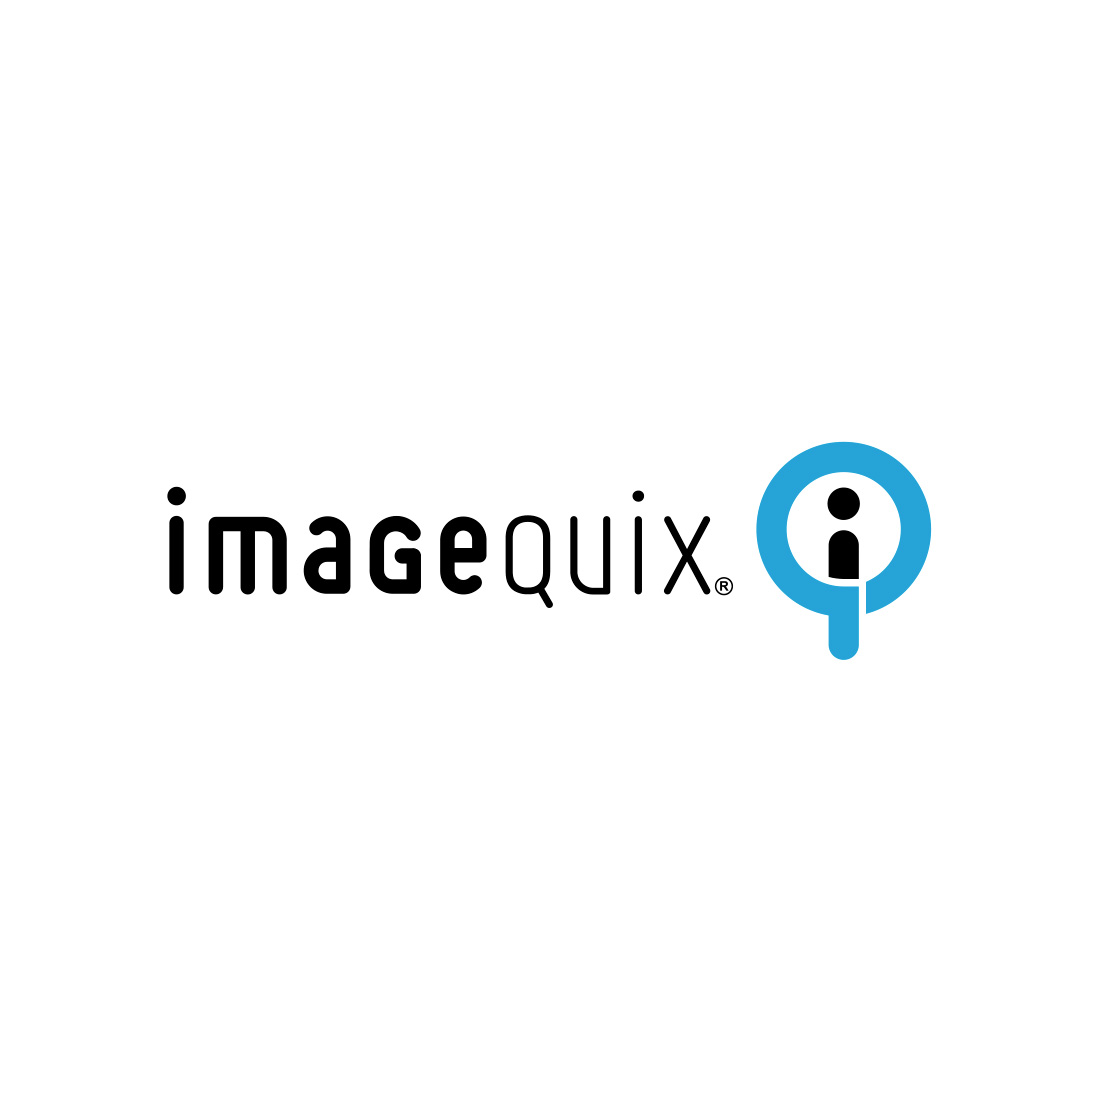 ImageQuix